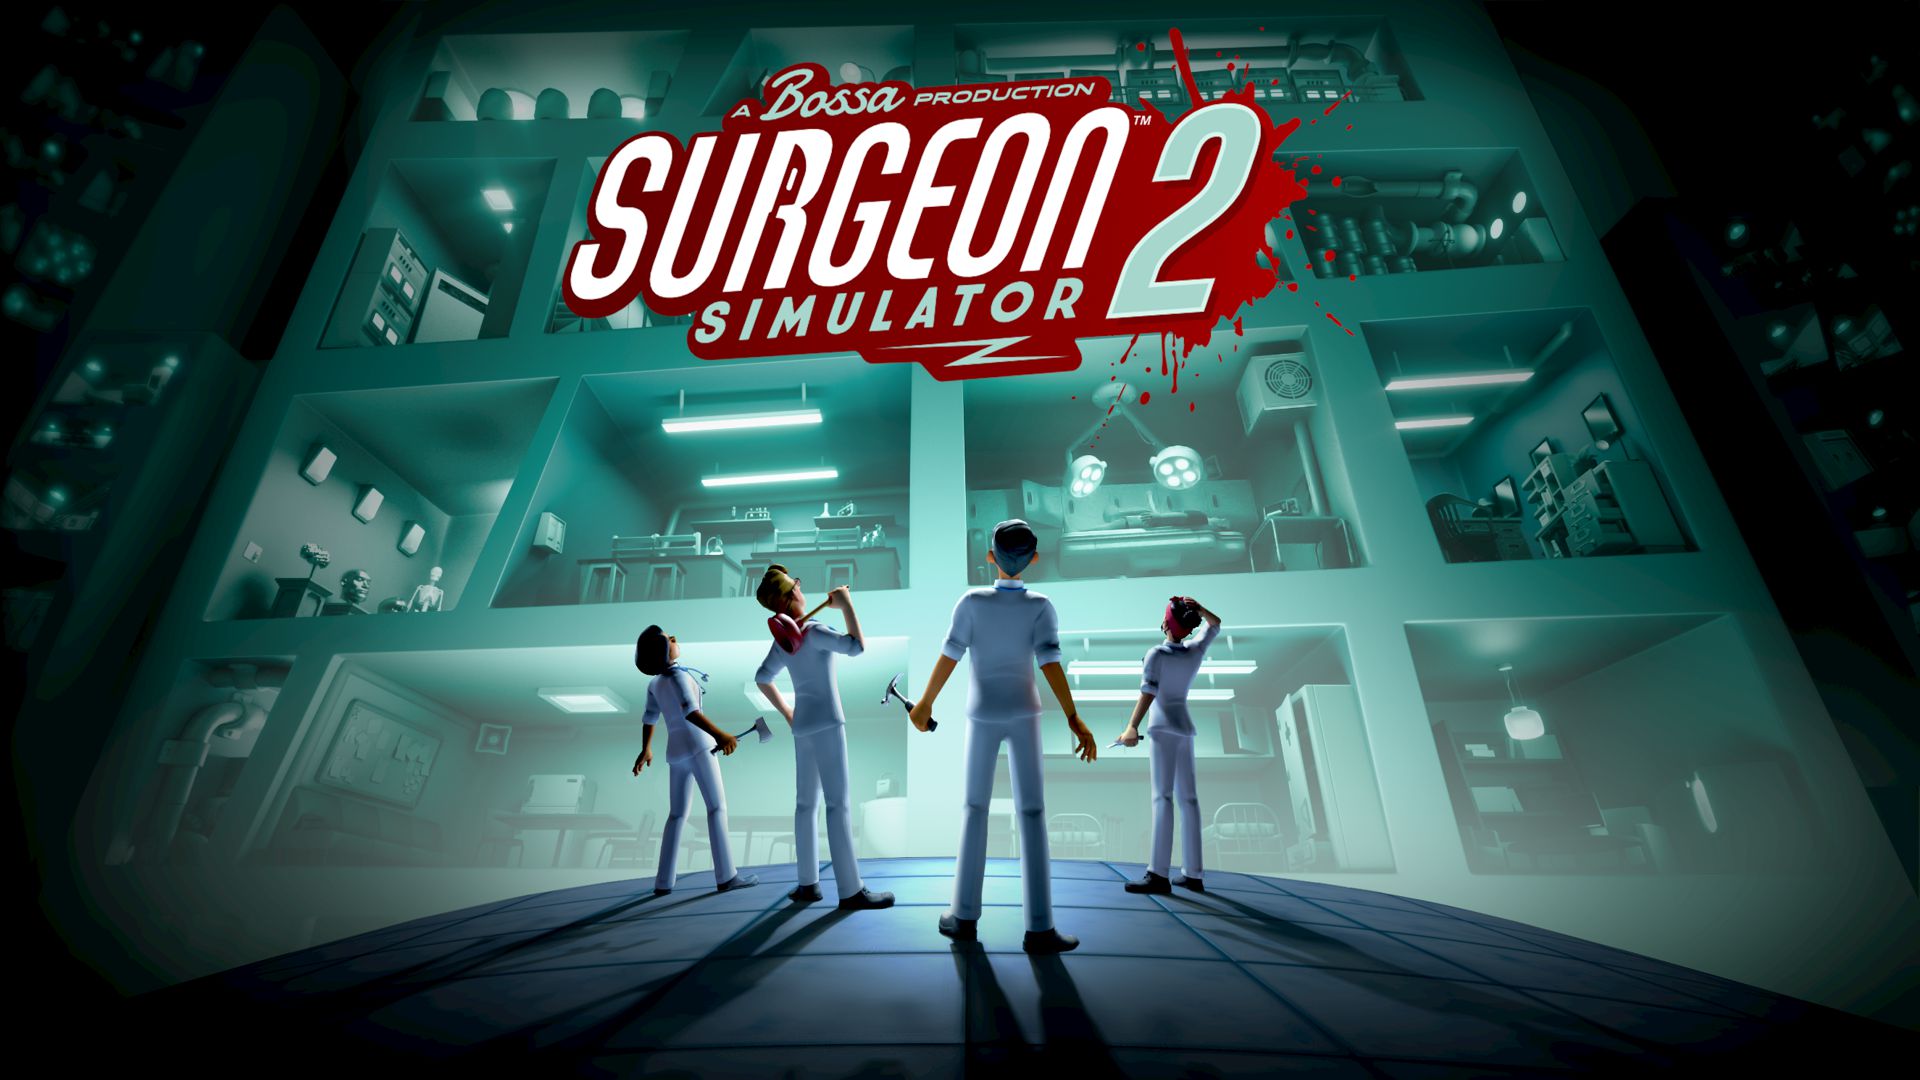 Surgeon Simulator 2 saldrá en agosto 27, tendrá modo creación